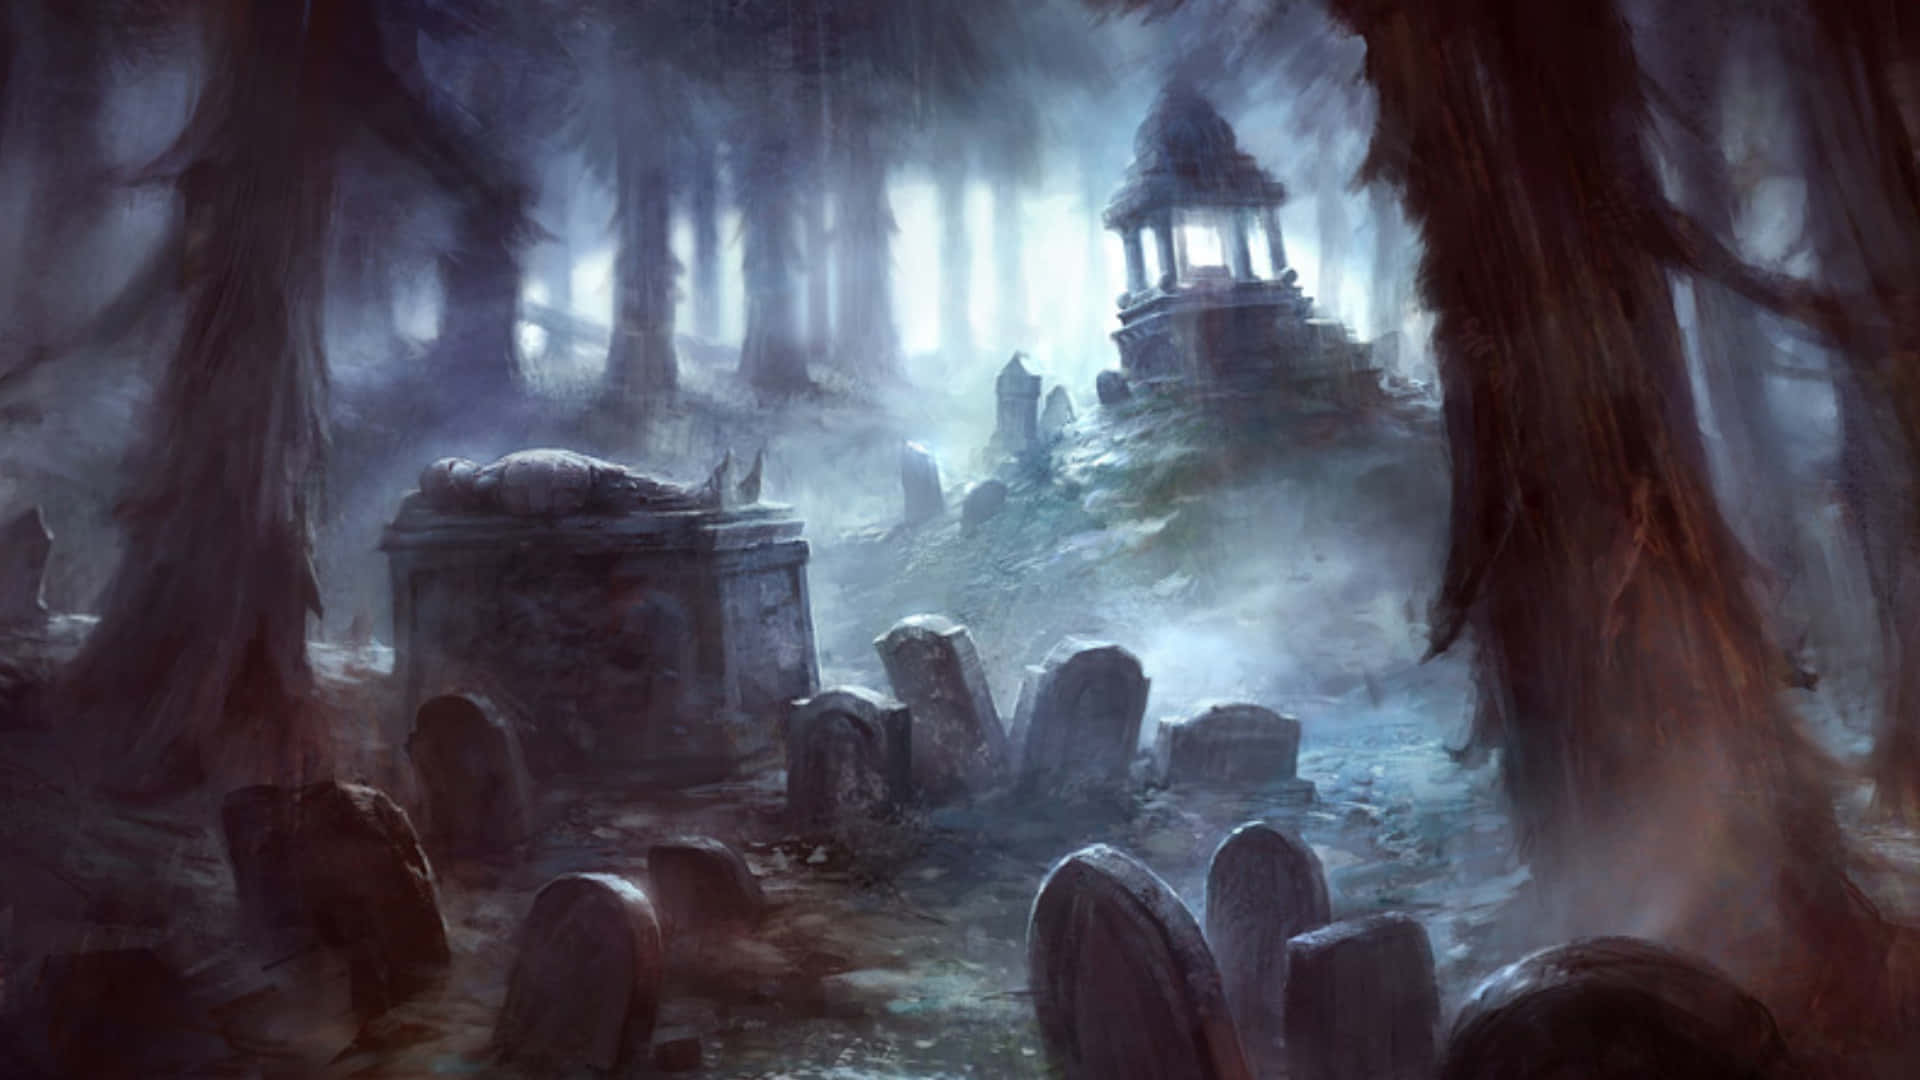 Unaescena Espeluznante De Un Cementerio Embrujado Justo A Tiempo Para Halloween. Fondo de pantalla